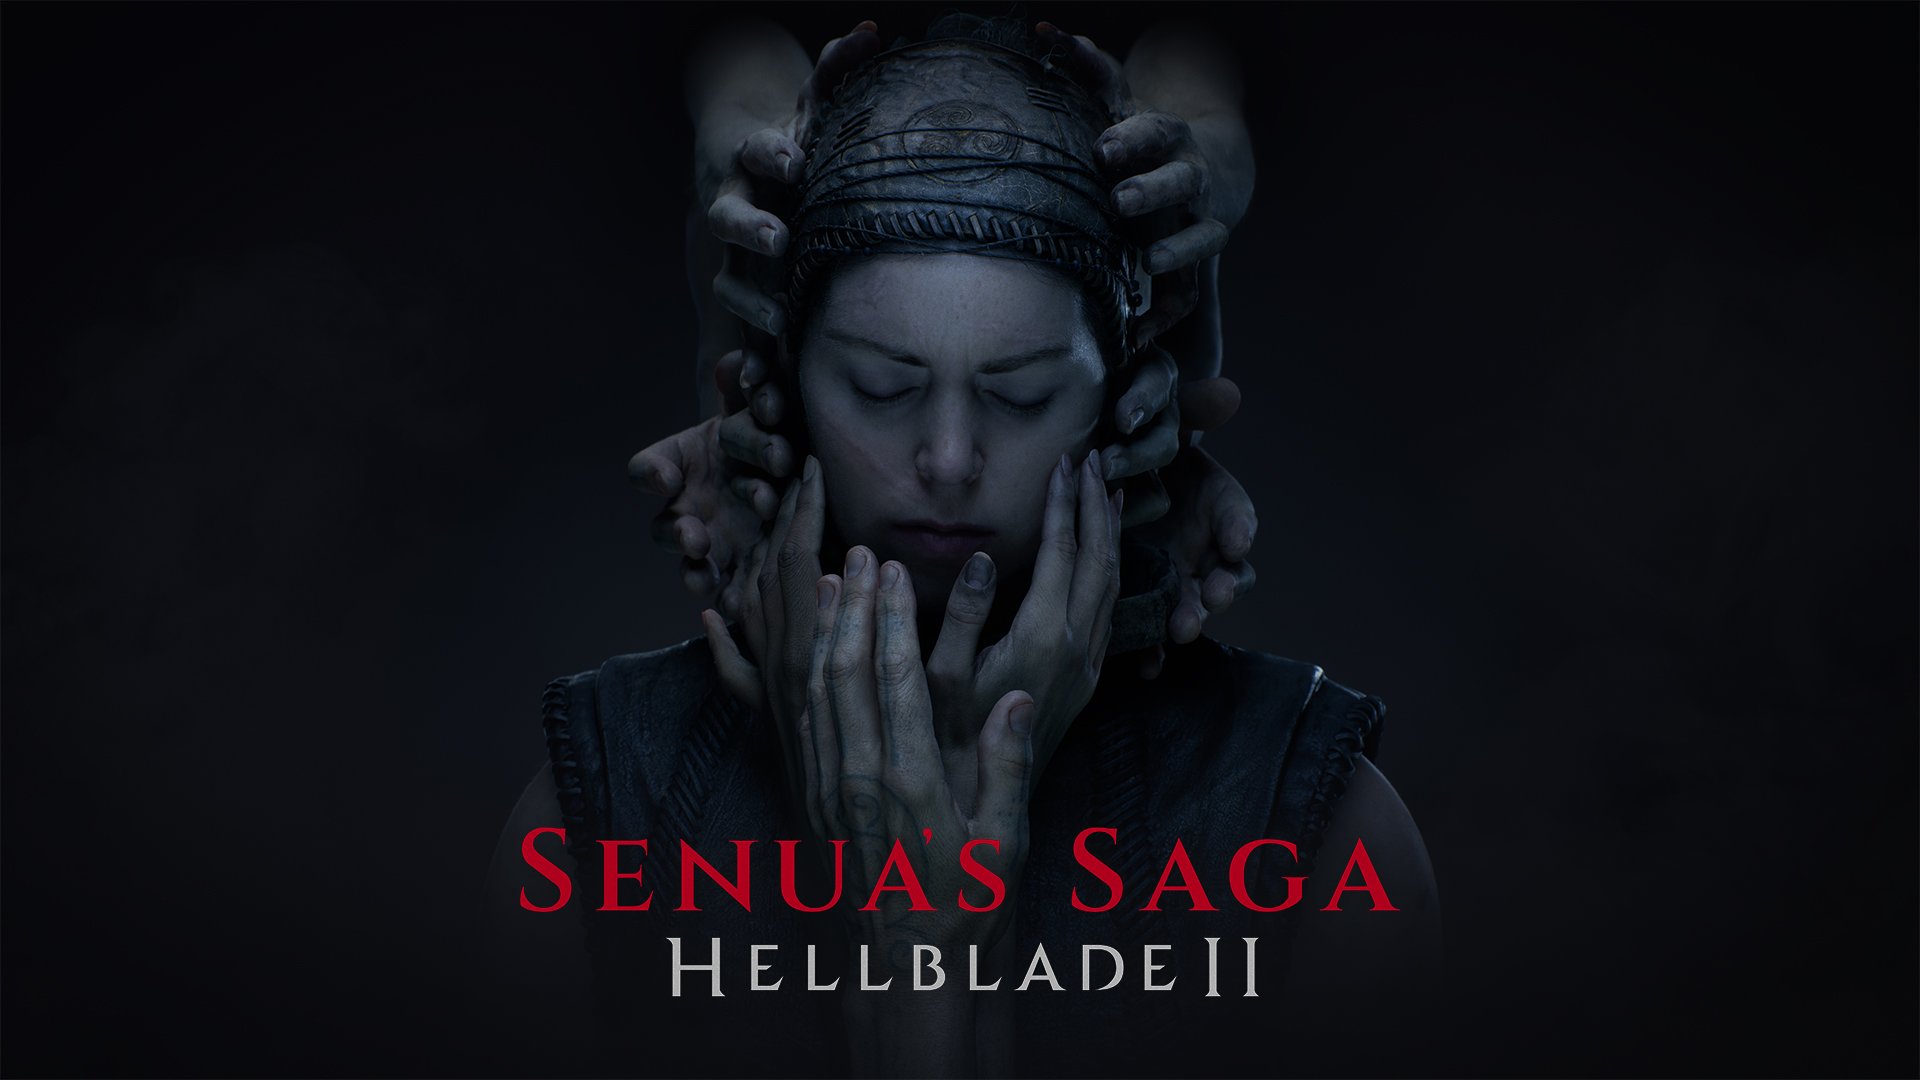 #
      Senua’s Saga: Hellblade II launches May 21